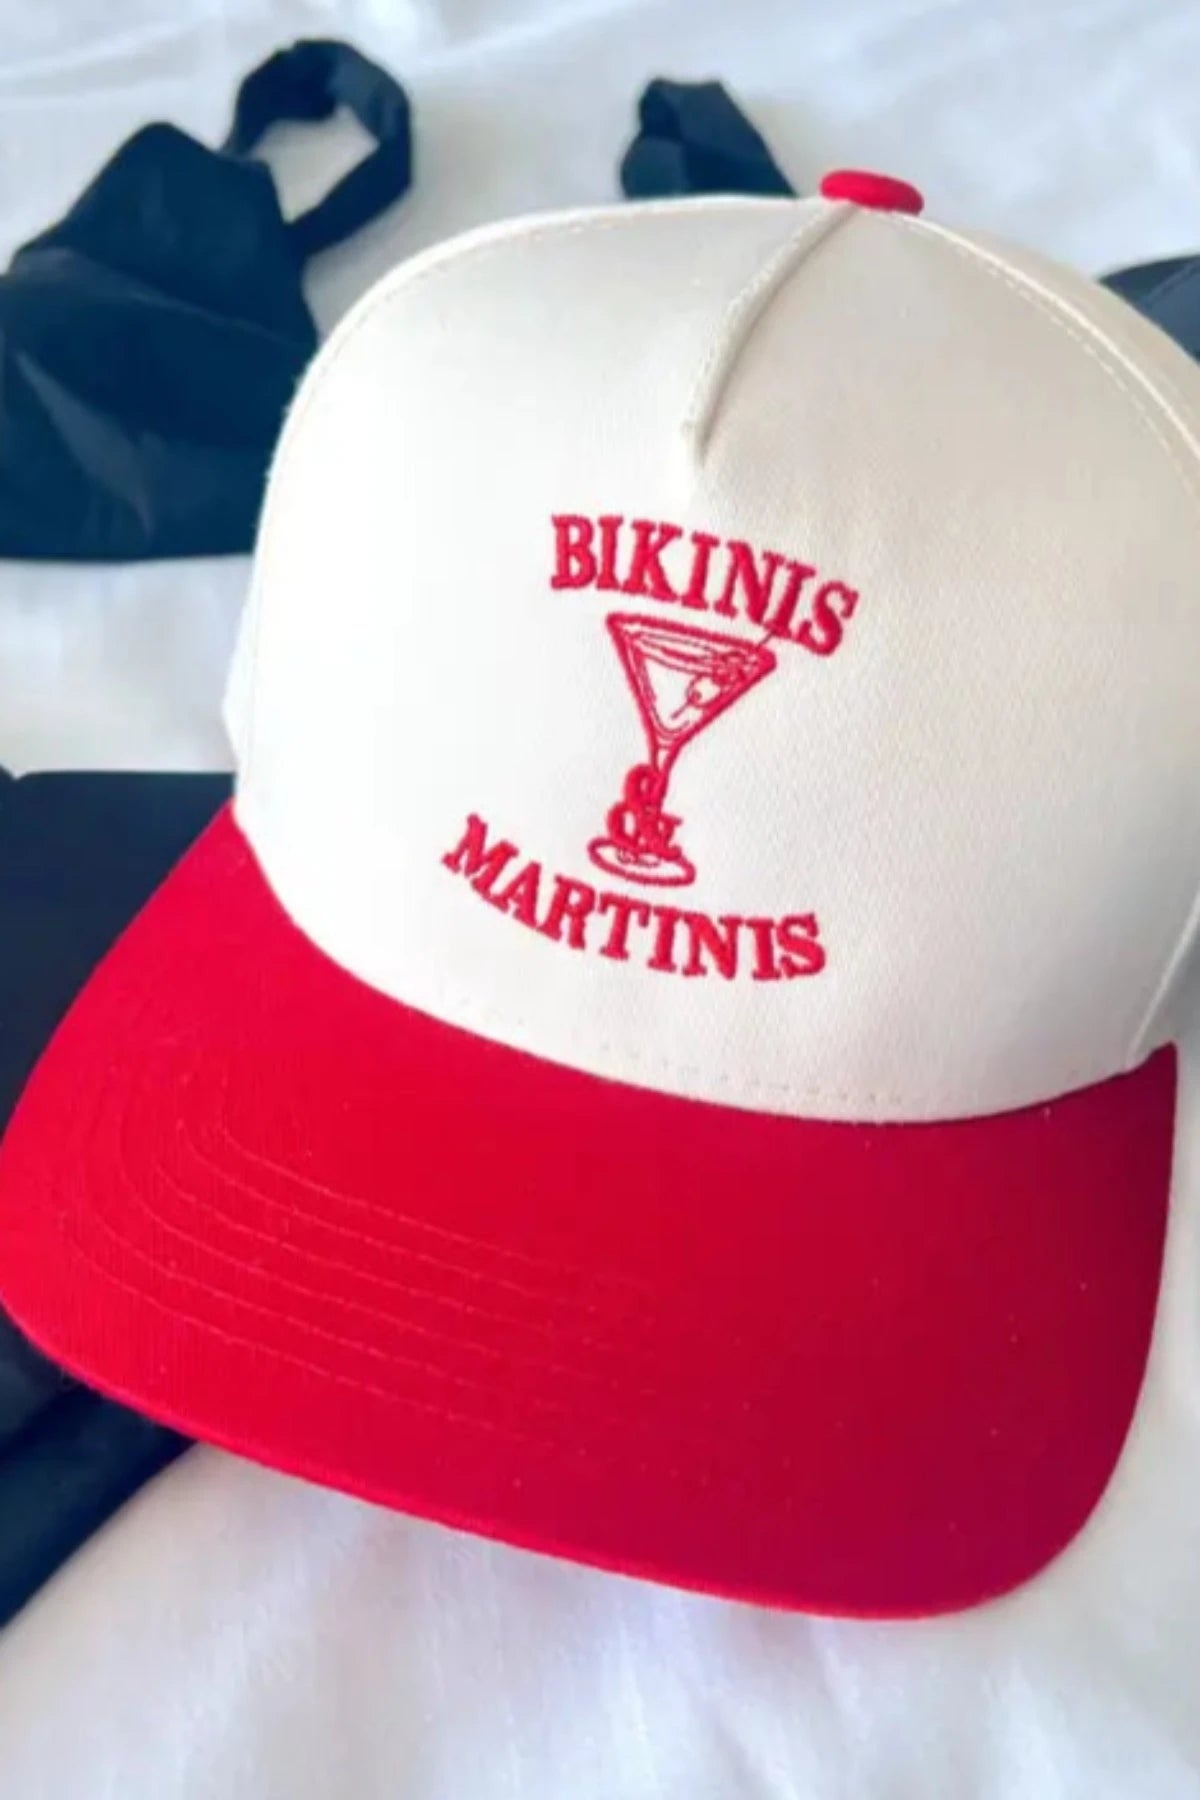 Bikinis & Martinis Trucker Hat